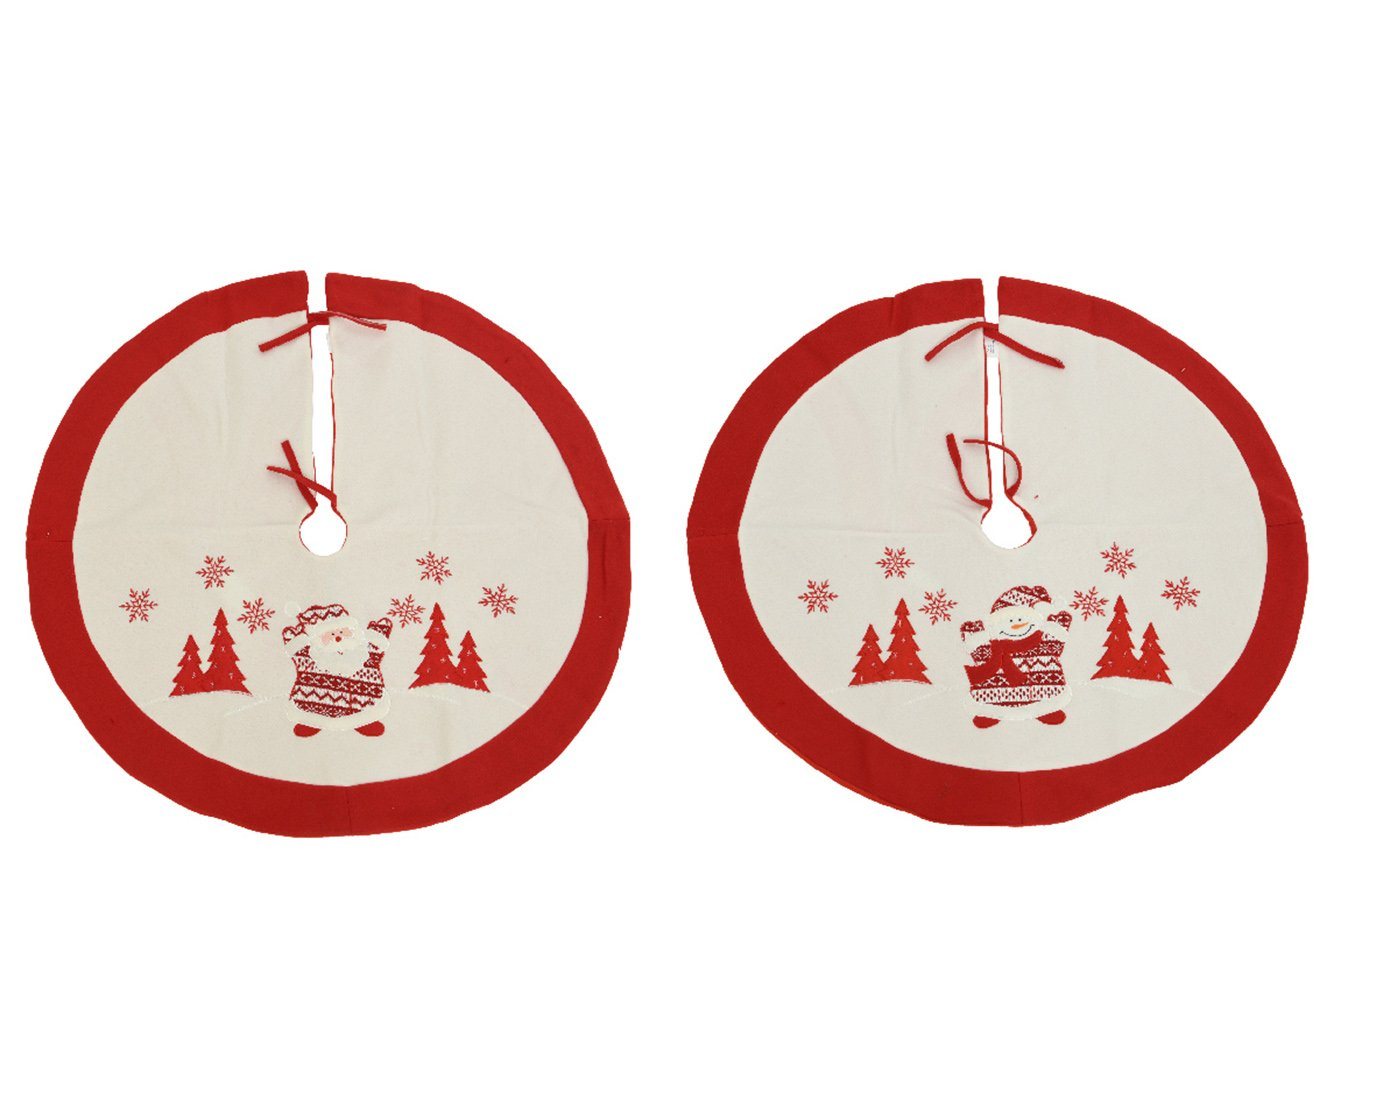 Decoris season decorations Weihnachtsbaumdecke, Weihnachtsbaumdecke Filz mit Schneemann / Santa 90cm rot 1 Stück sort. von Decoris season decorations